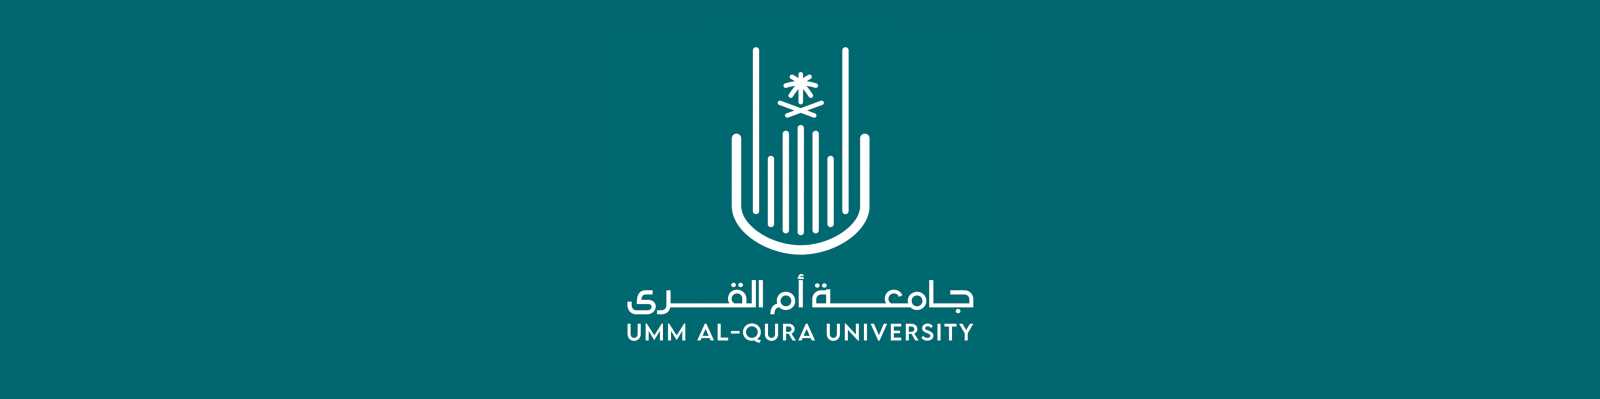 الشعار الجديد للجامعة